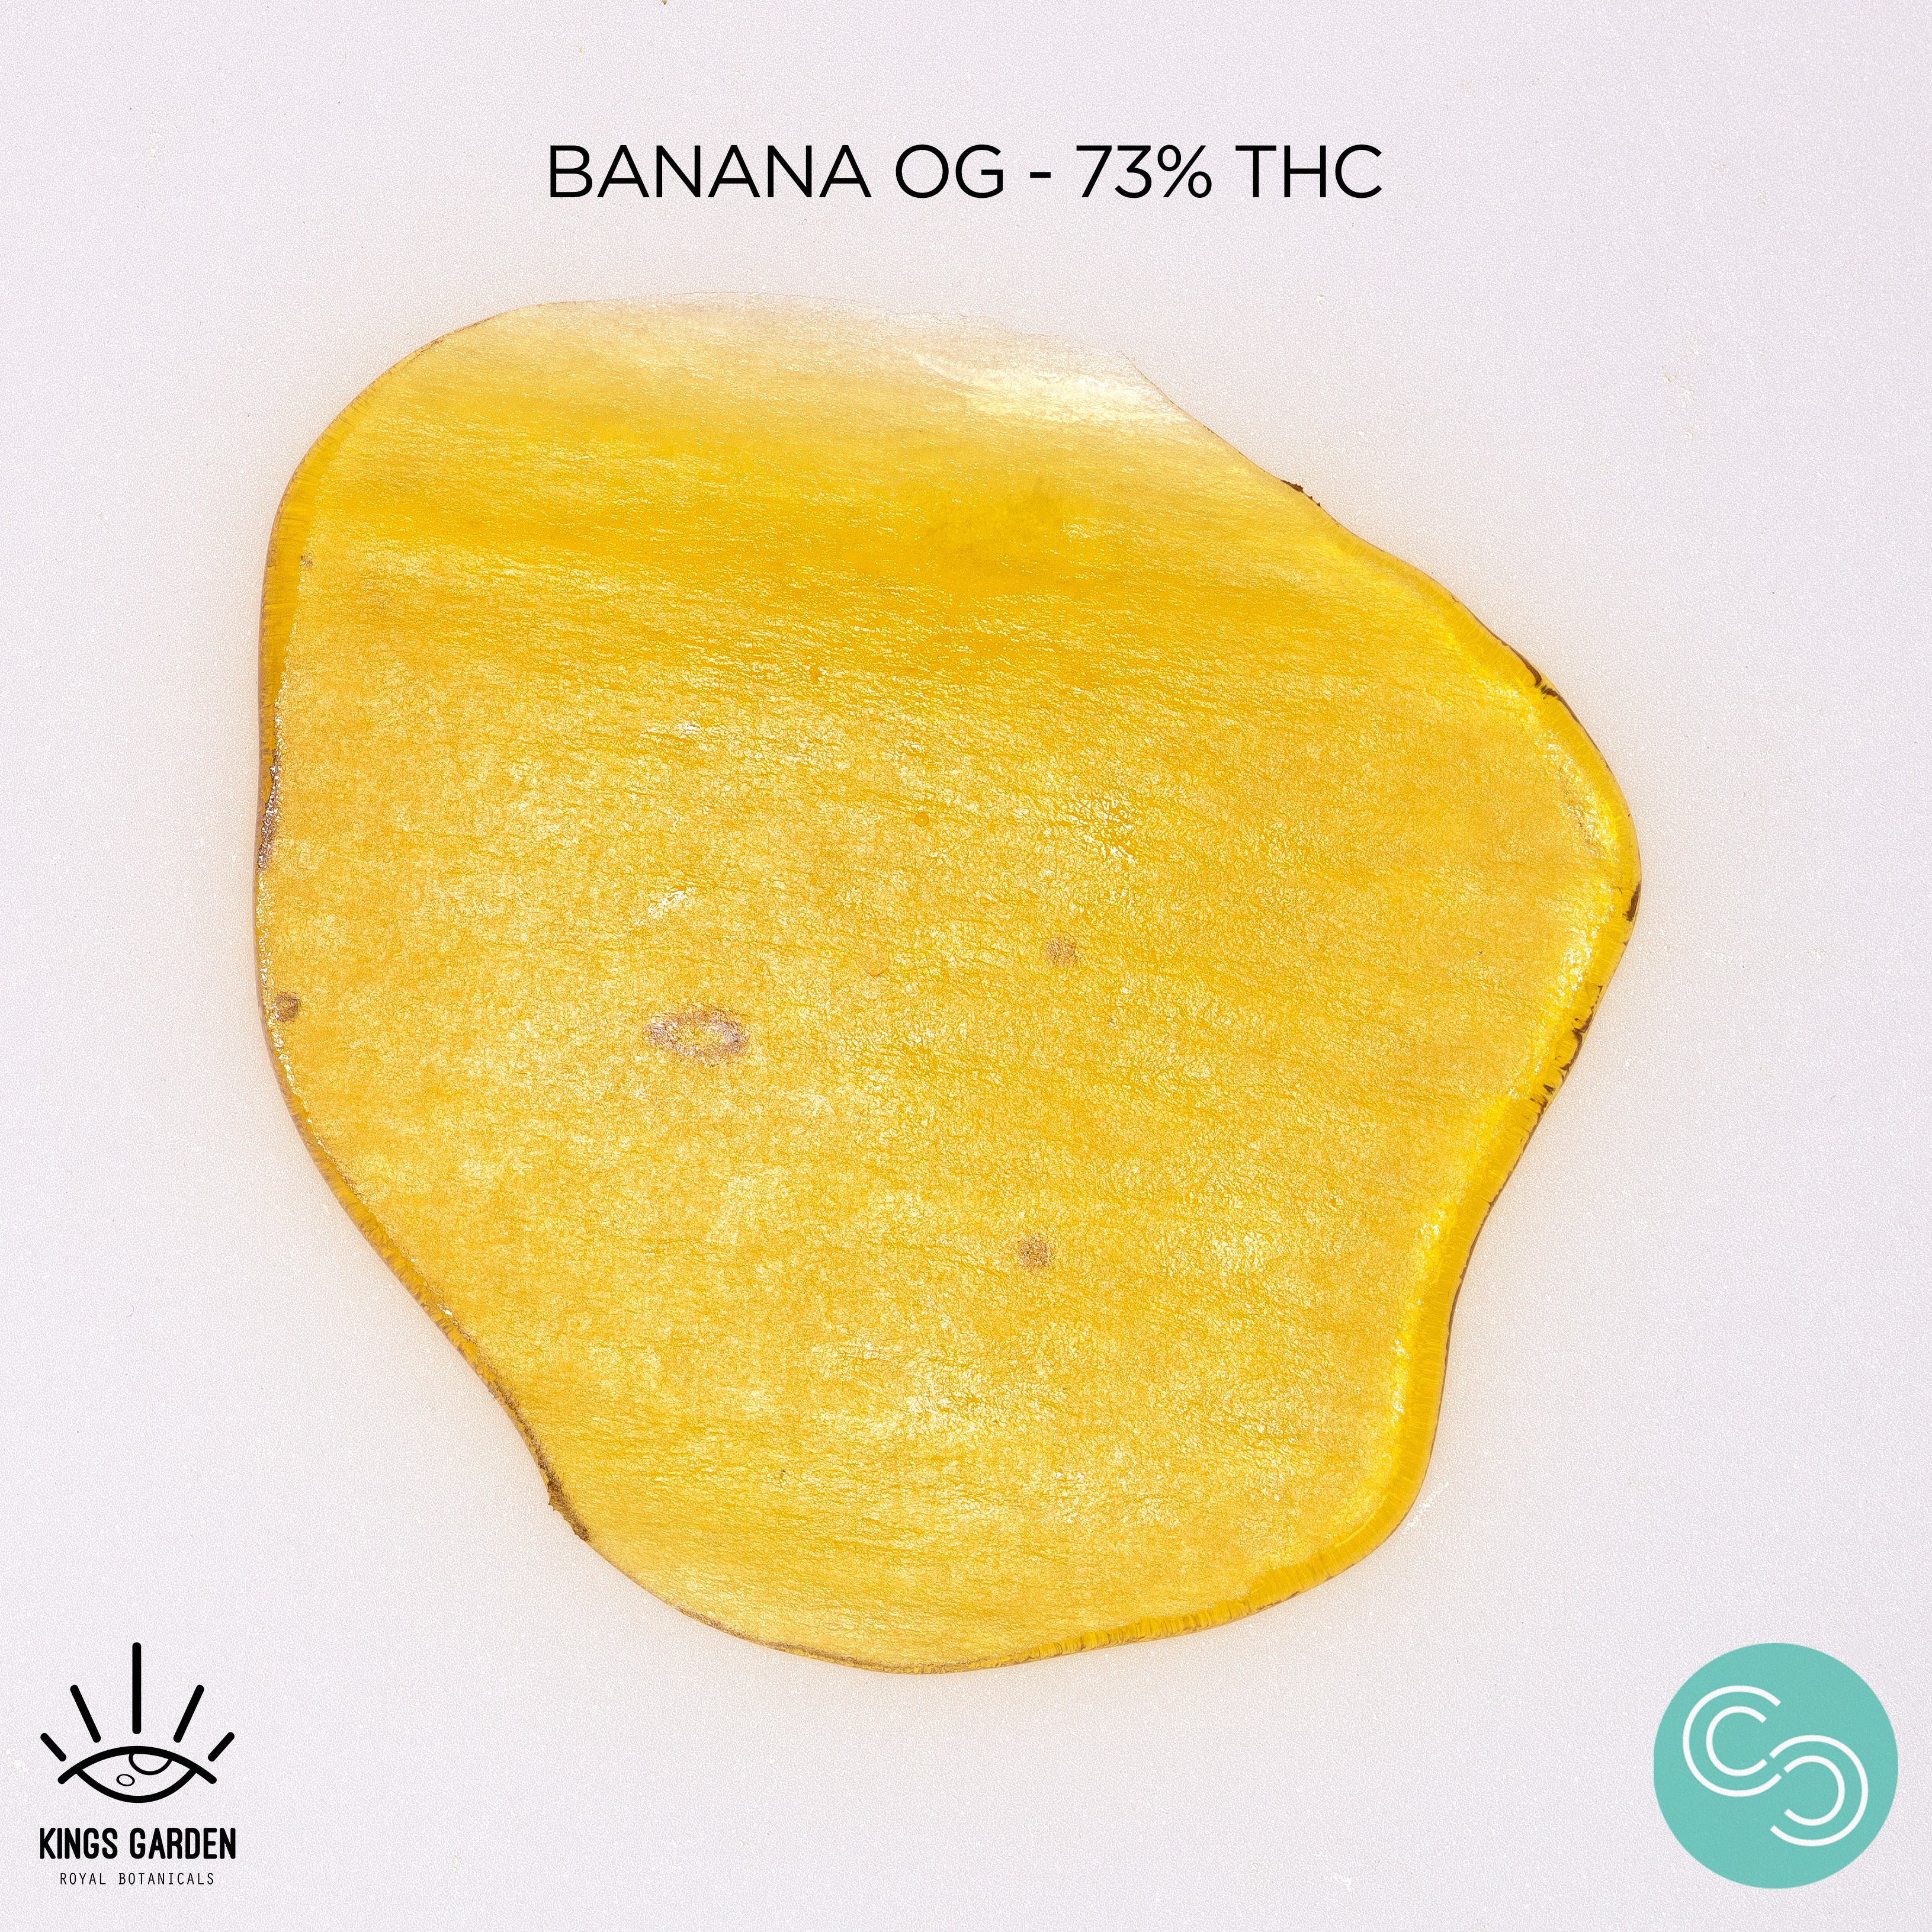 Kings Garden - Banana OG - 73% THC